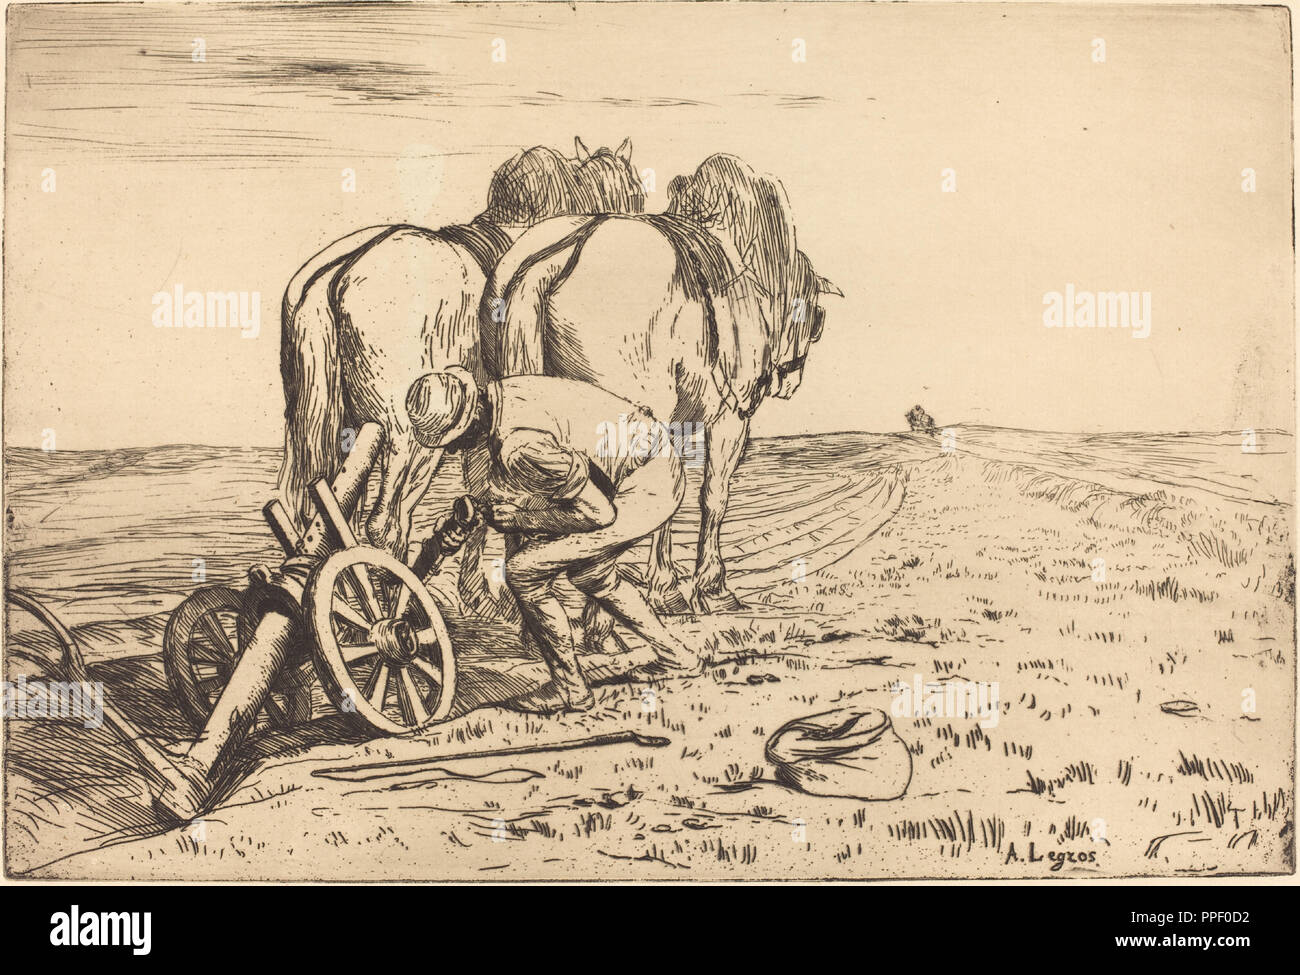 L'aratro (La charrue). Medio: l'attacco. Museo: National Gallery of Art di Washington DC. Autore: Alphonse Legros. Foto Stock